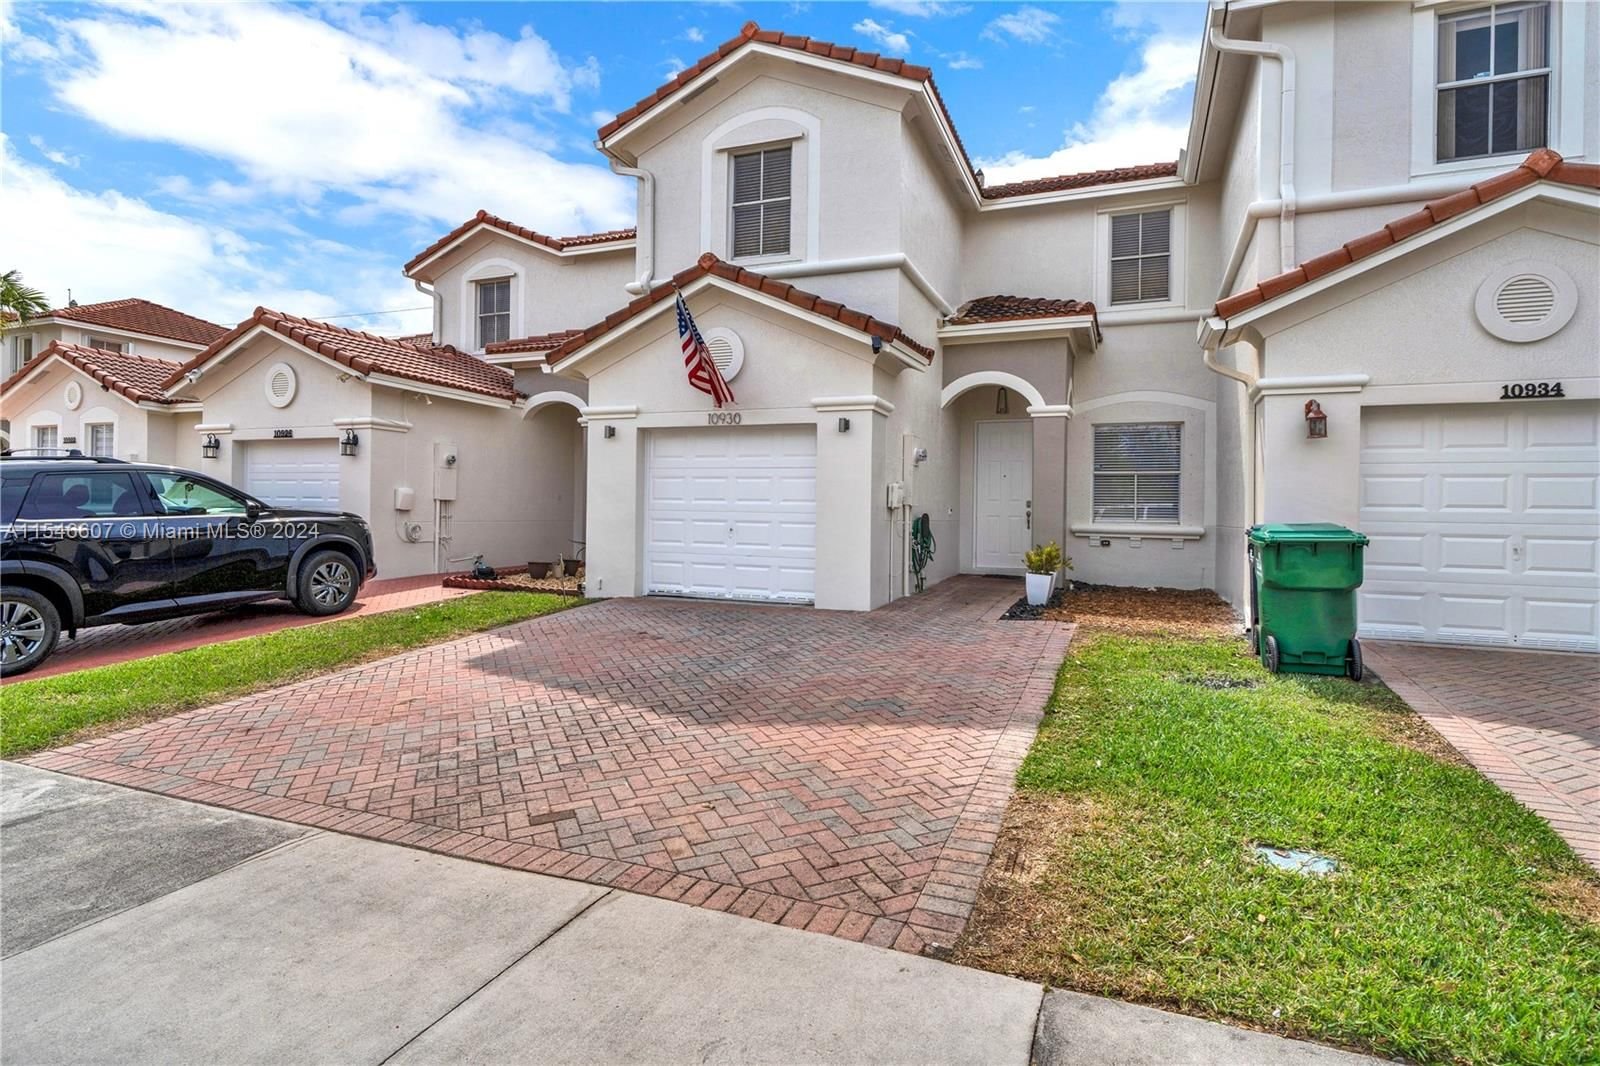 Real estate property located at 10930 247th Ter, Miami-Dade County, VILLAS DEL CAMPO SUB, Homestead, FL